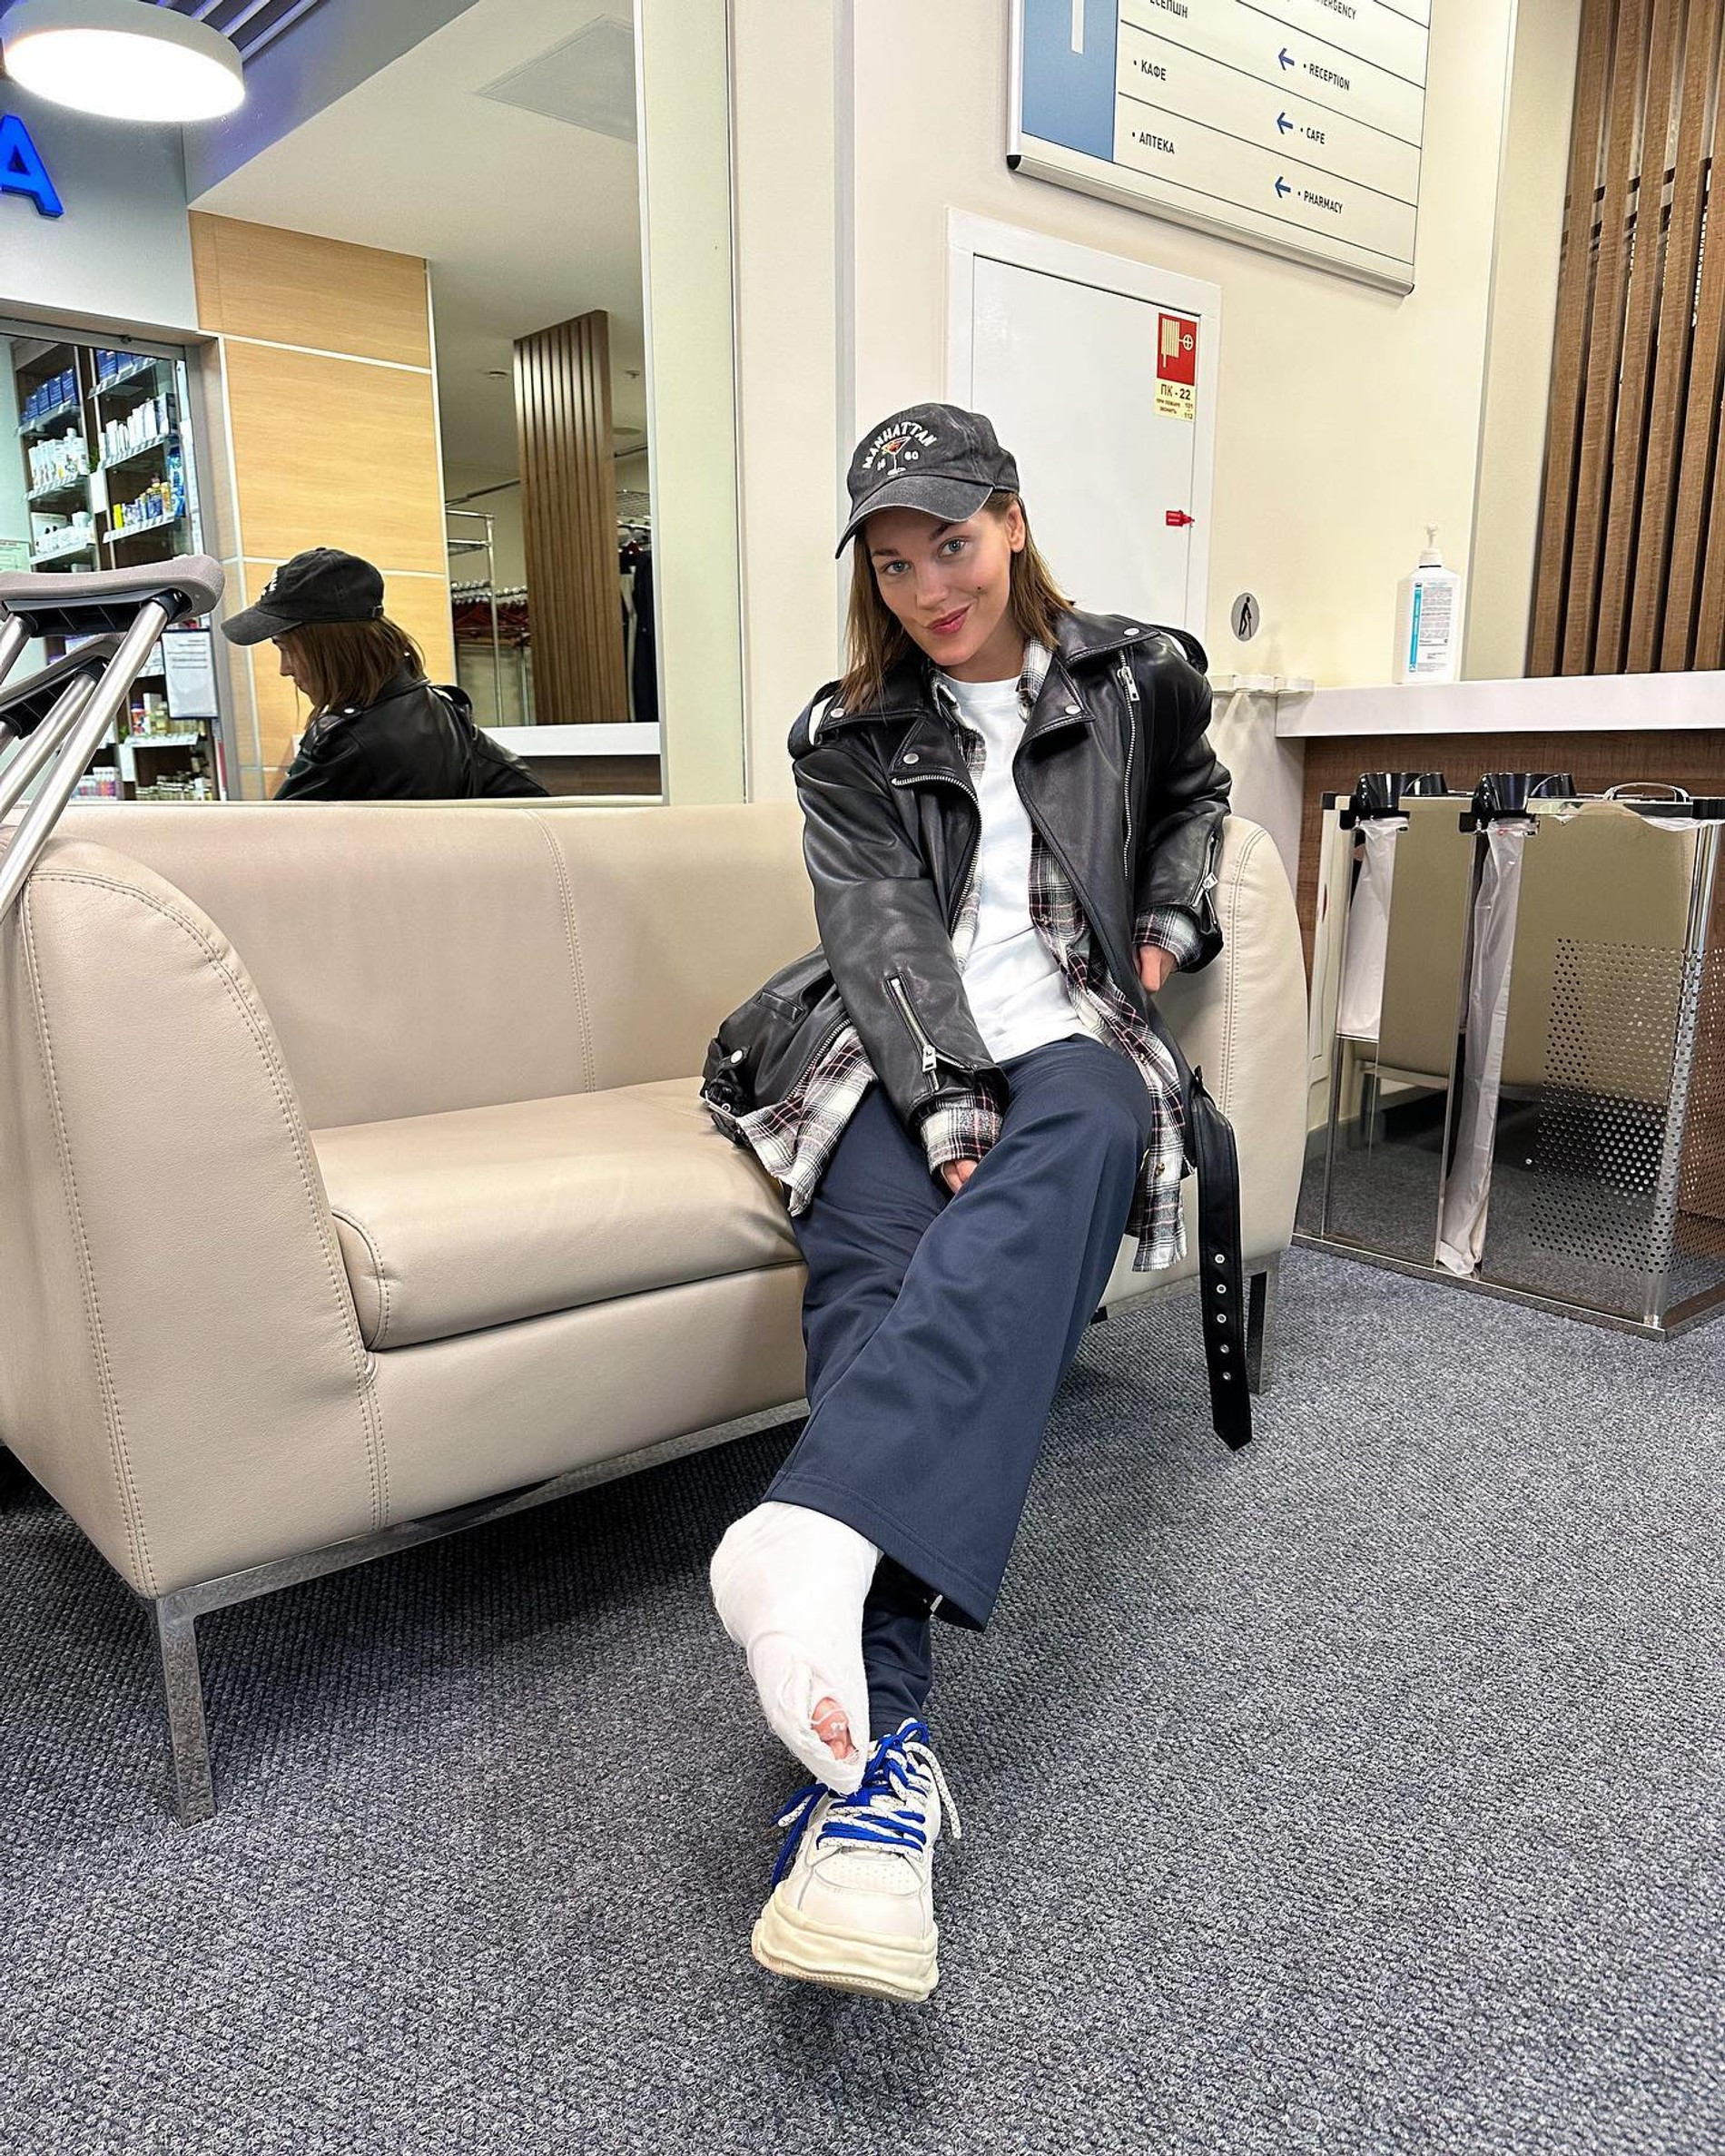 Кристина Асмус со сломанной ногой. Фото: Инстаграм (запрещен в РФ) Кристины Асмус